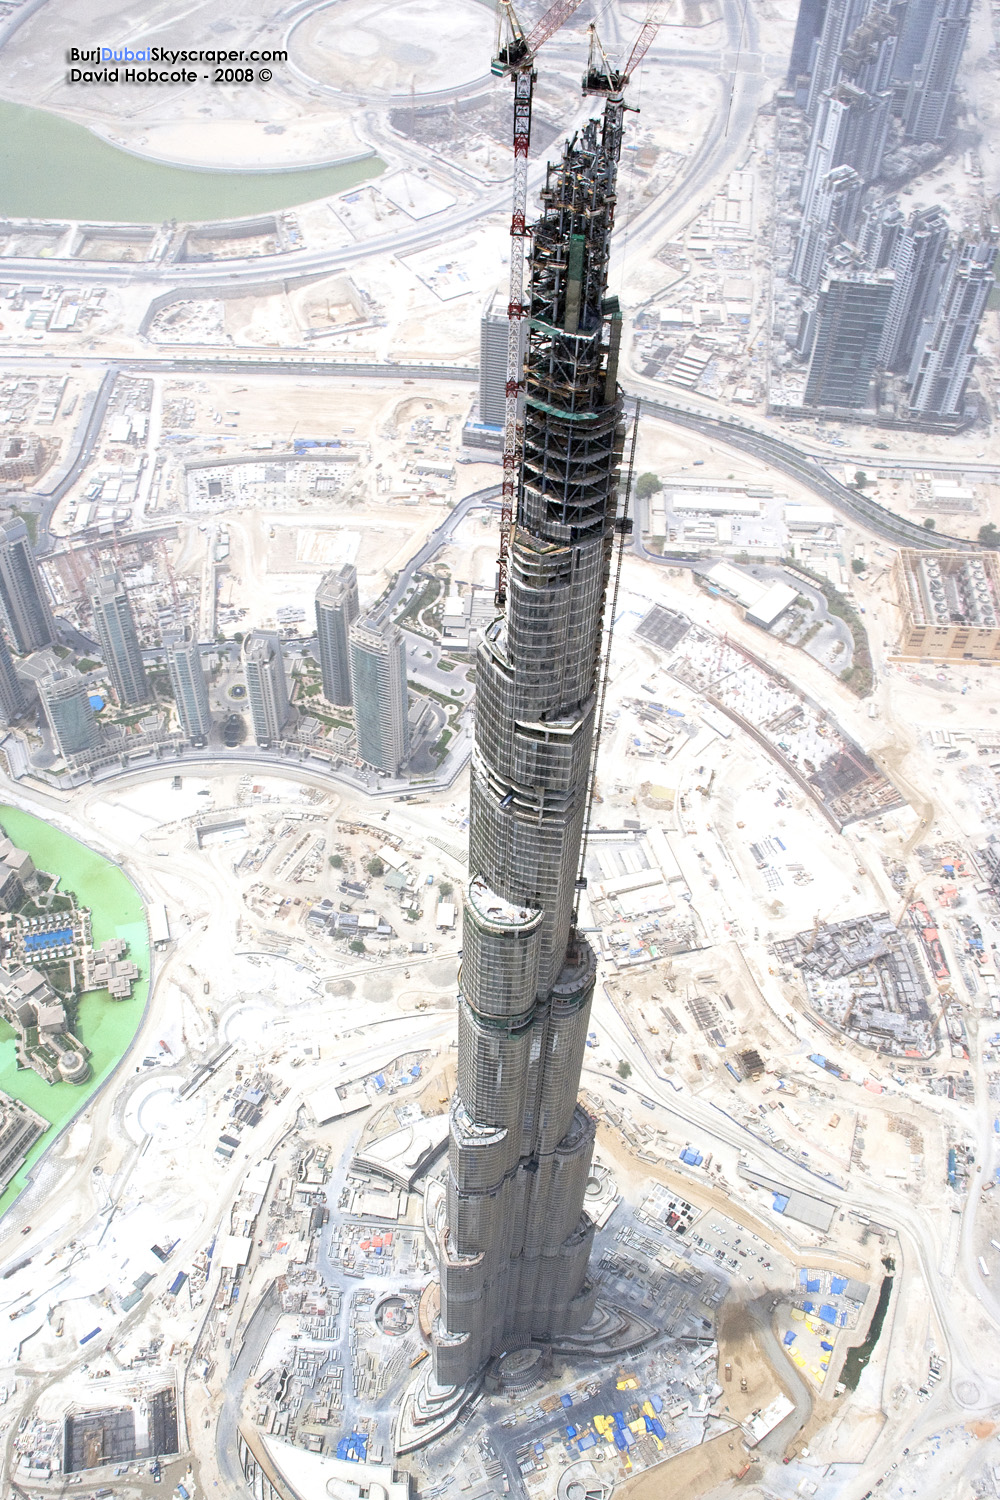 Burj Dubai = gigantesque